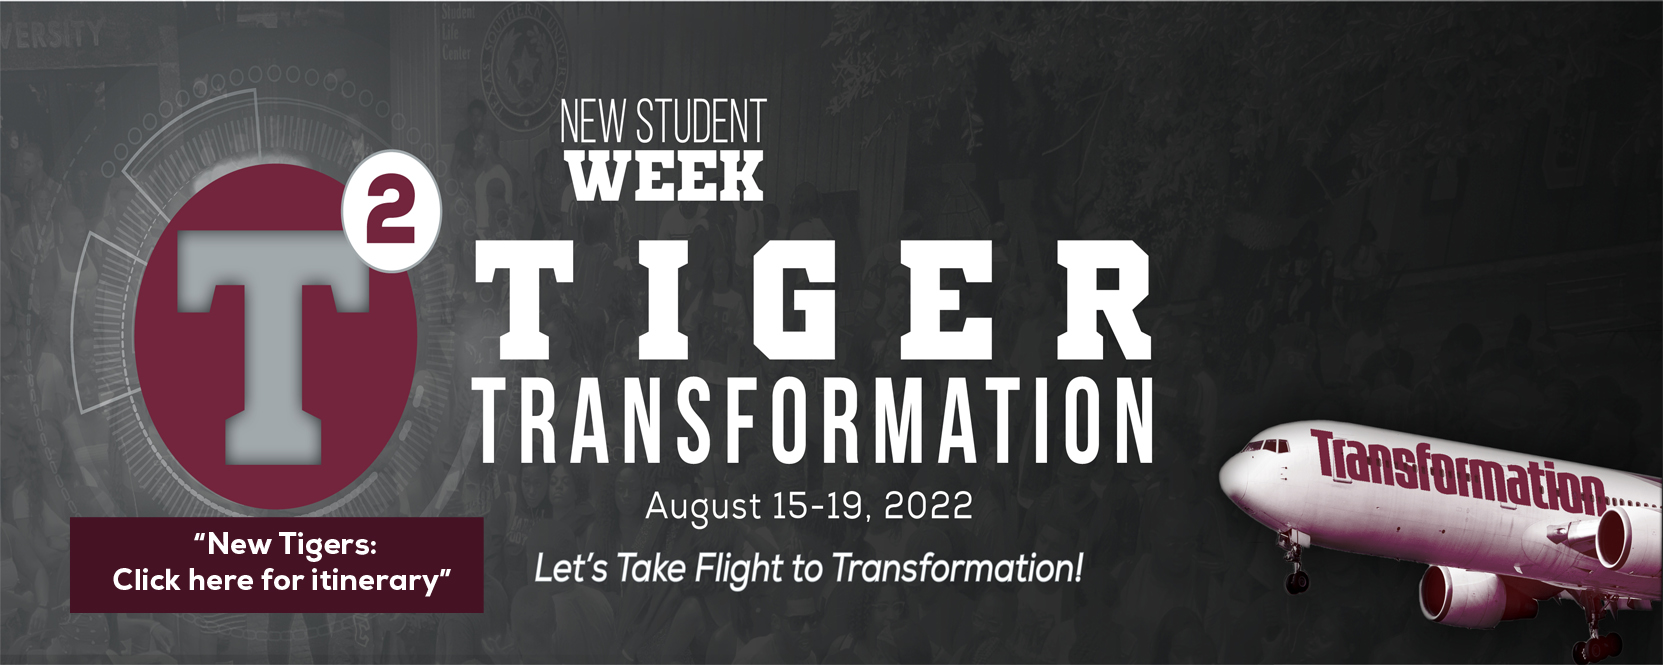 tiger-transformation-t2-sliders-2022